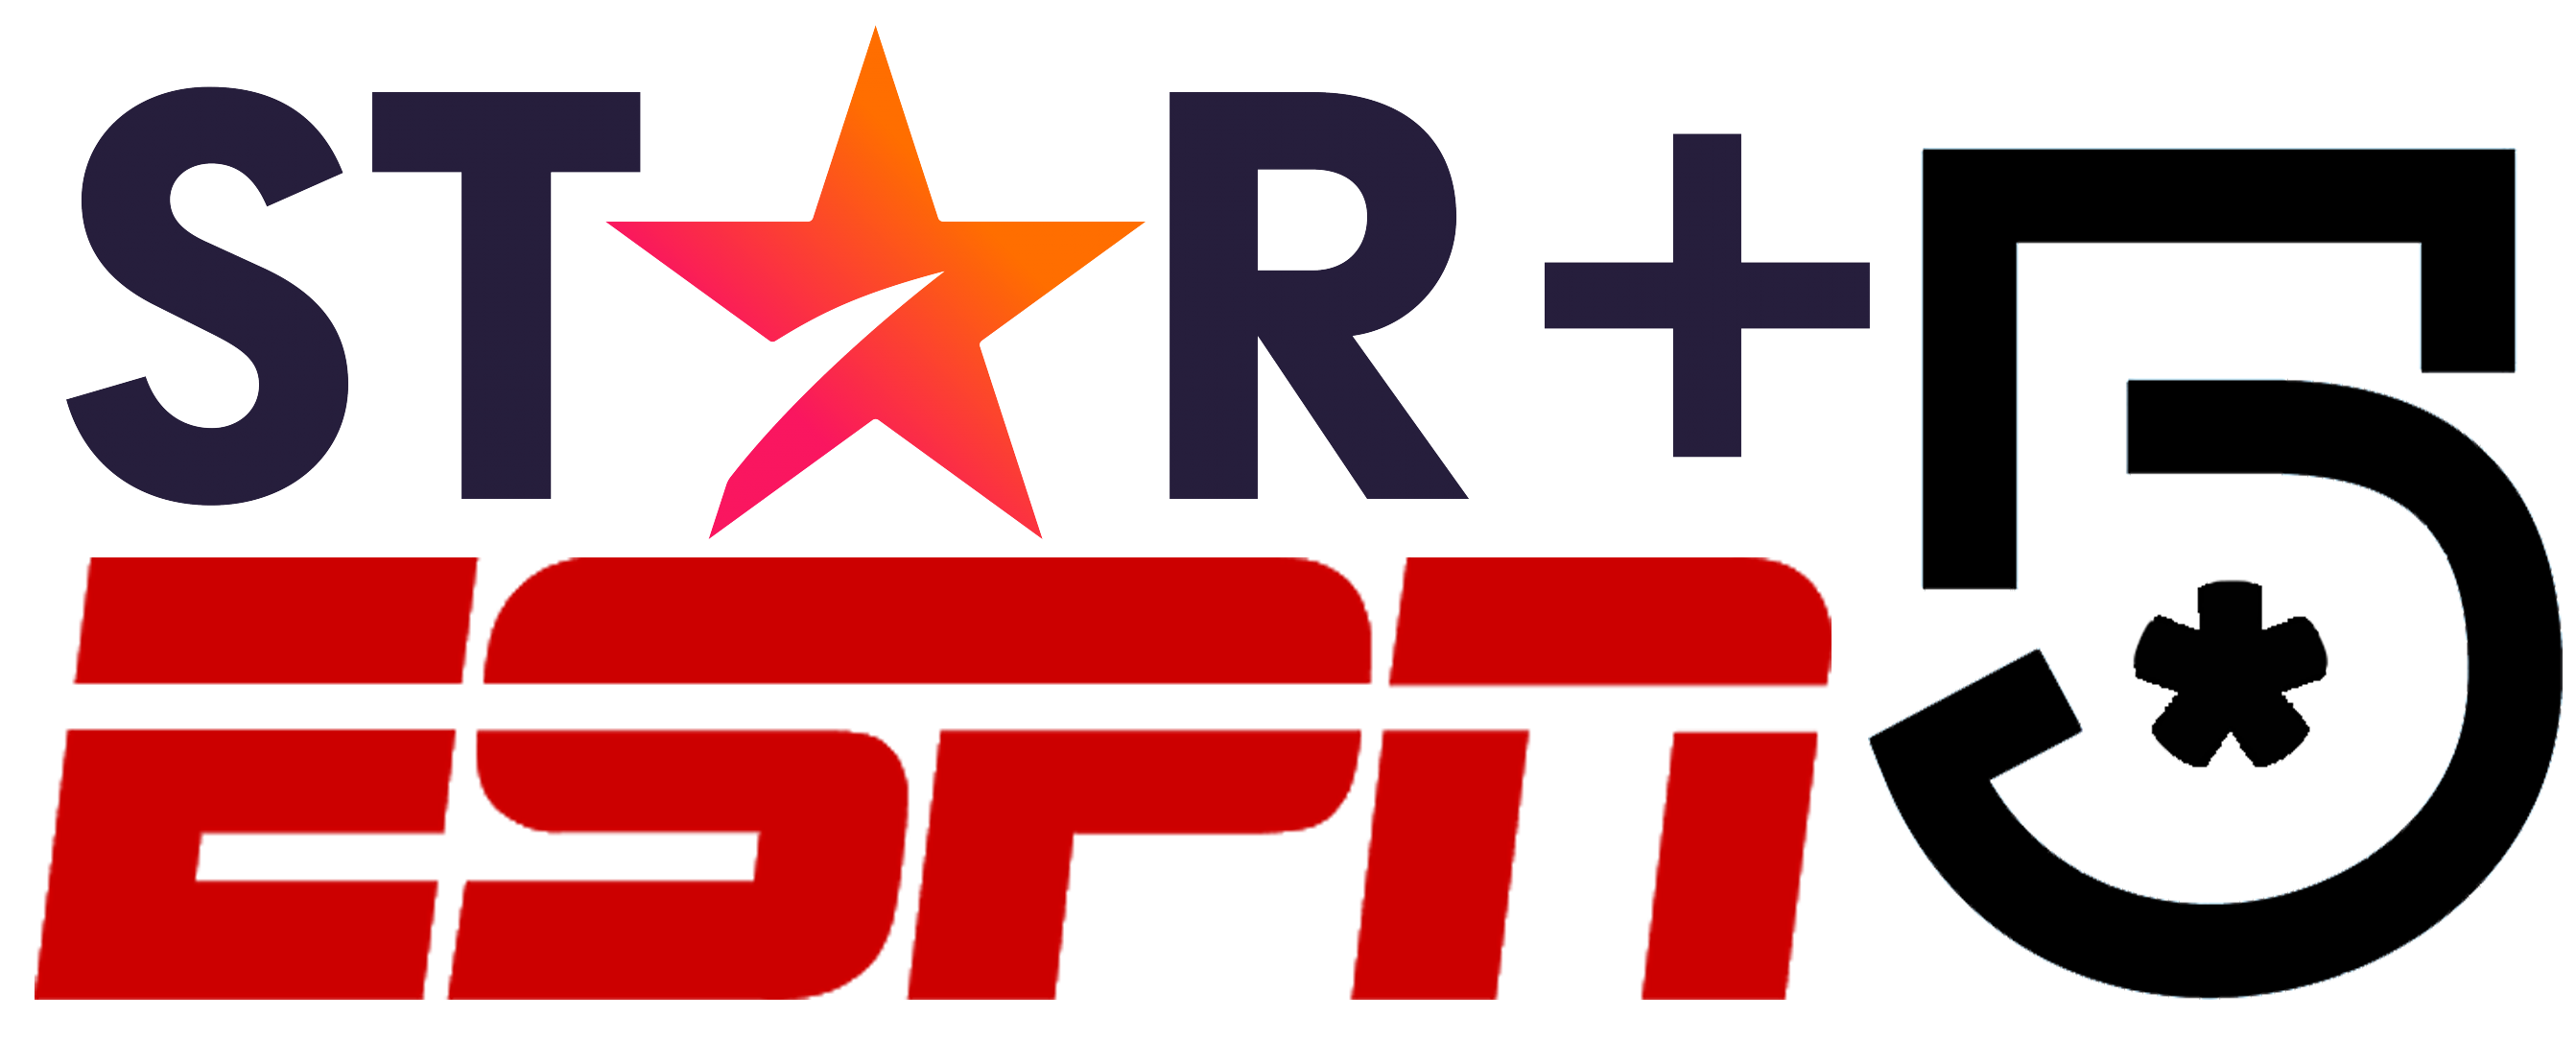 Canal 5 | ESPN | STAR+